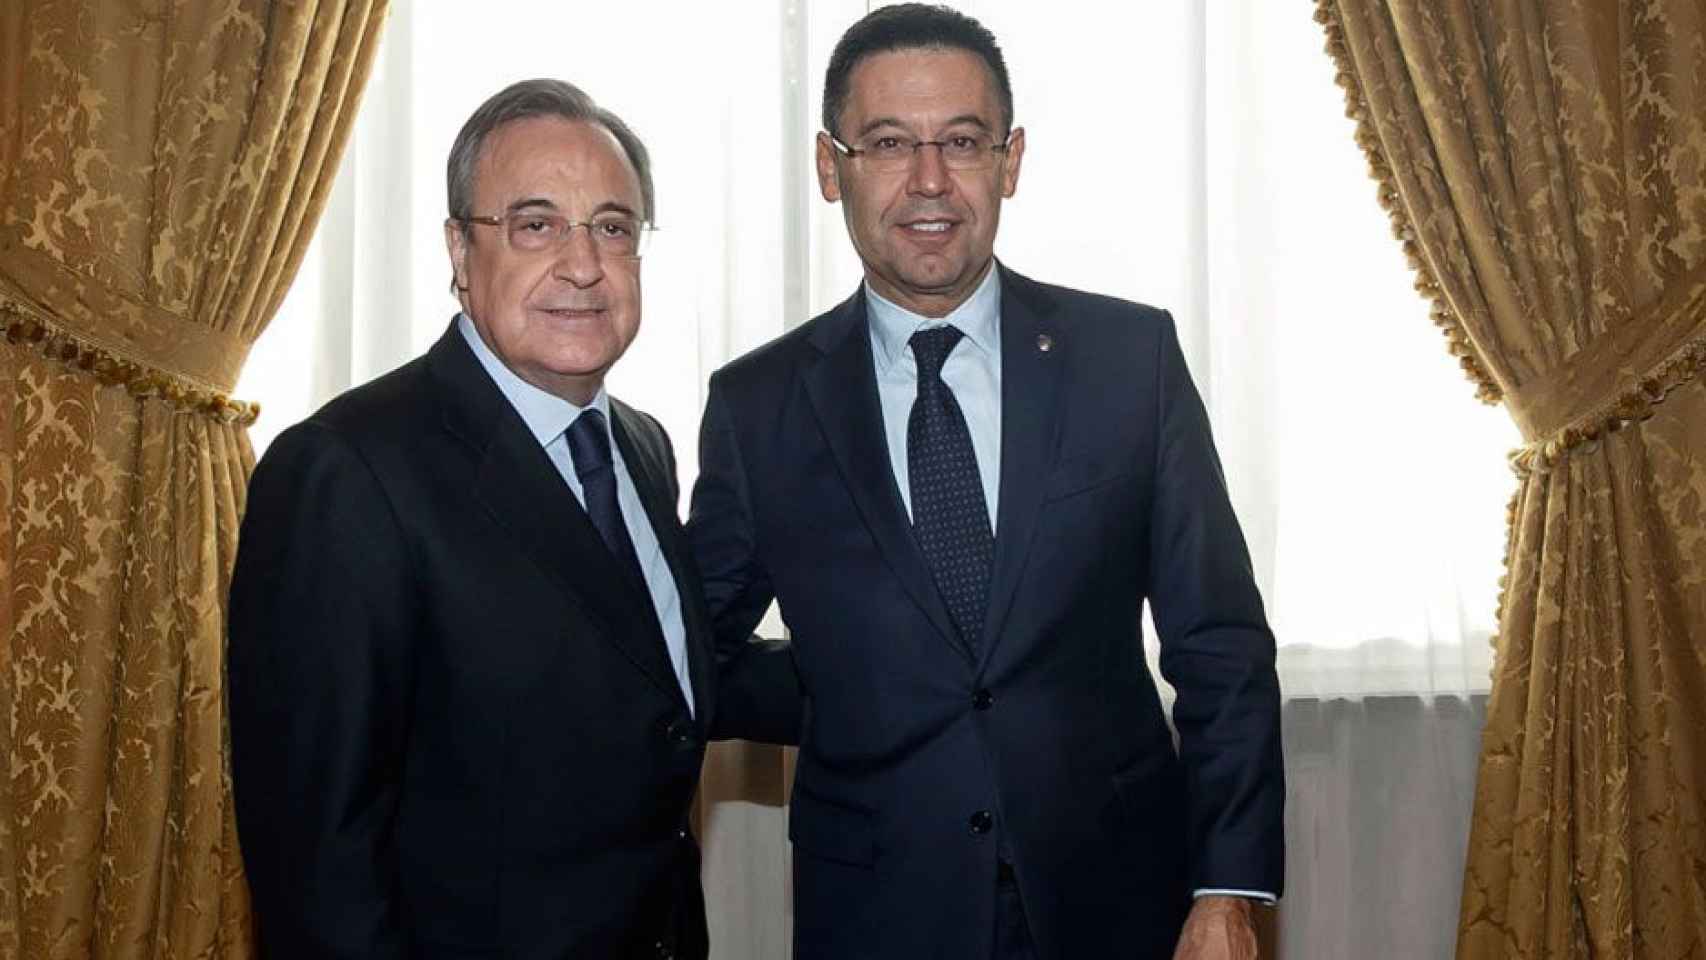 Josep María Bartomeu y Florentino Pérez posan antes de un clásico entre el Barça y el Real Madrid / EFE